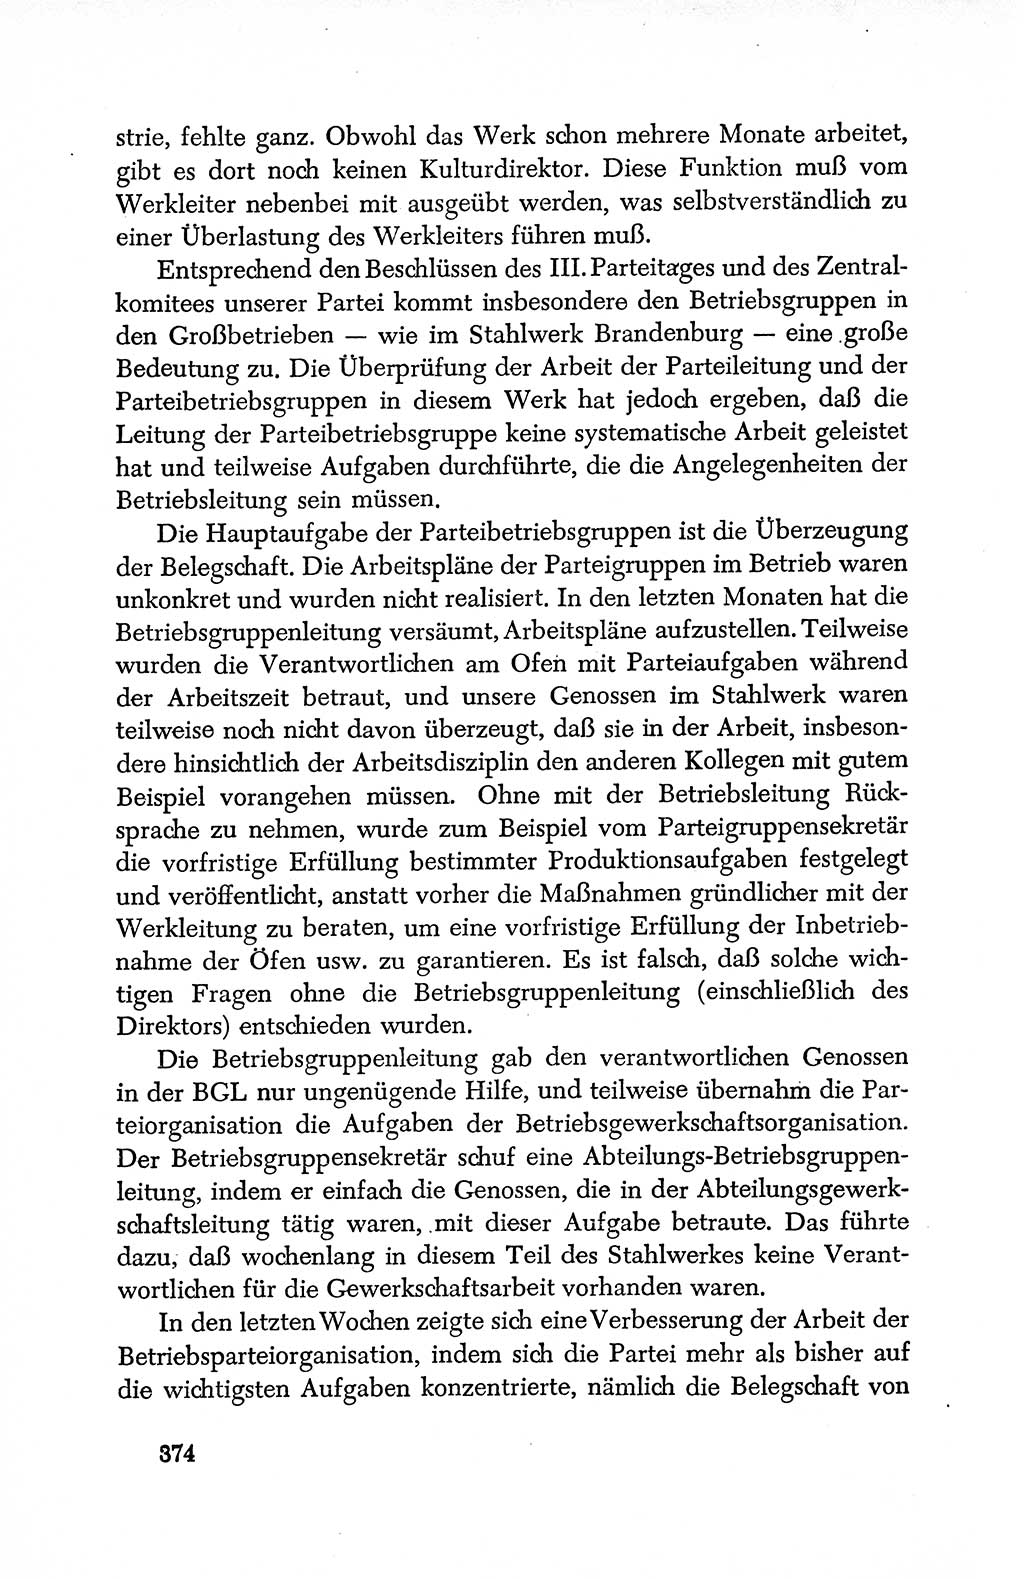 Dokumente der Sozialistischen Einheitspartei Deutschlands (SED) [Deutsche Demokratische Republik (DDR)] 1950-1952, Seite 374 (Dok. SED DDR 1950-1952, S. 374)